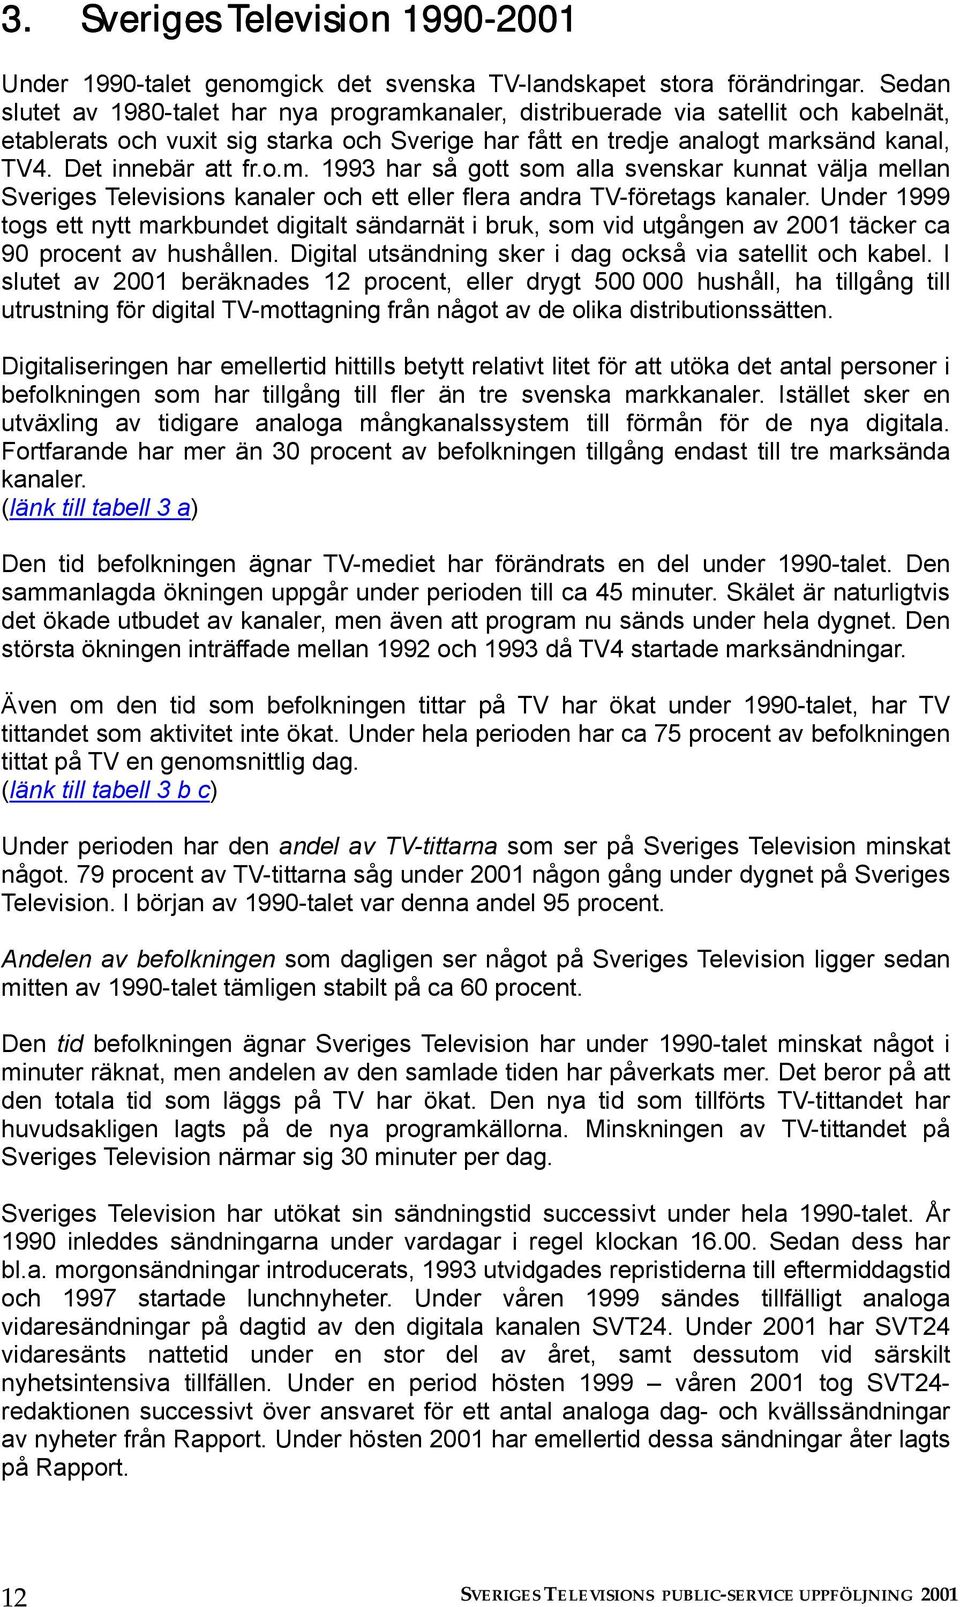 Det innebär att fr.o.m. 1993 har så gott som alla svenskar kunnat välja mellan Sveriges Televisions kanaler och ett eller flera andra TV-företags kanaler.